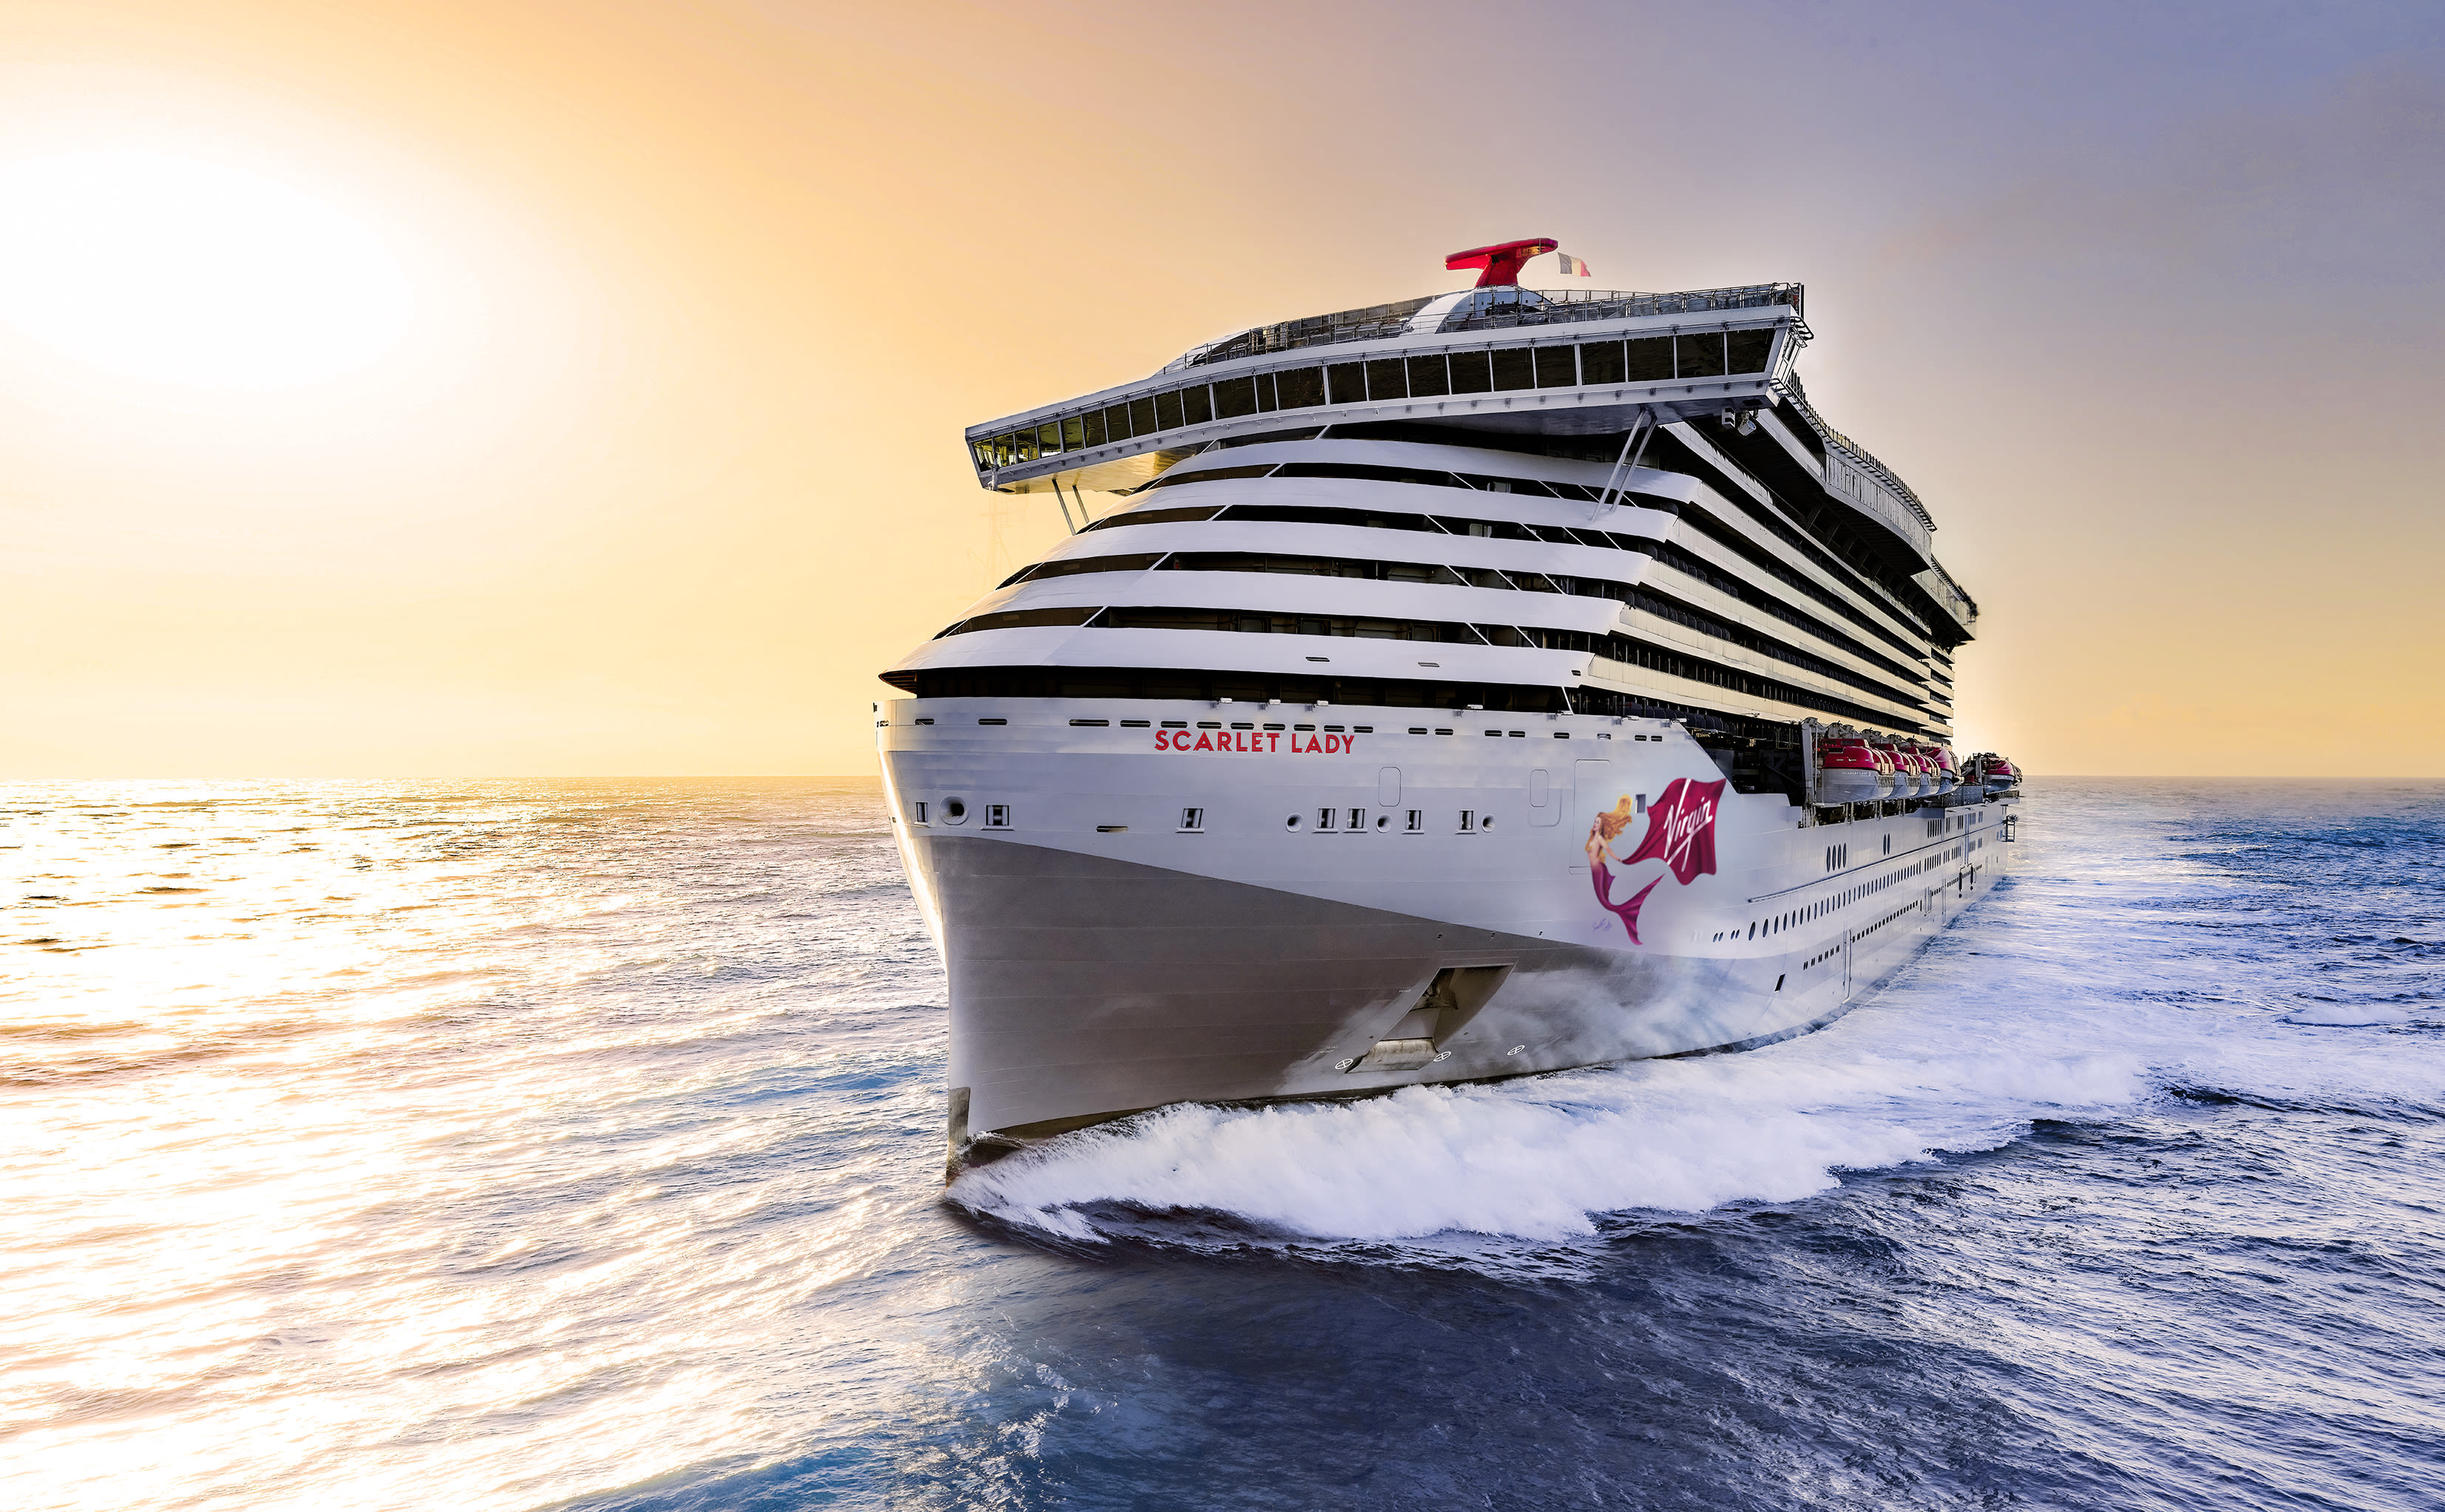 Scarlet Lady, Virgin Voyages' inaugural cruise ship, sailing at sunset